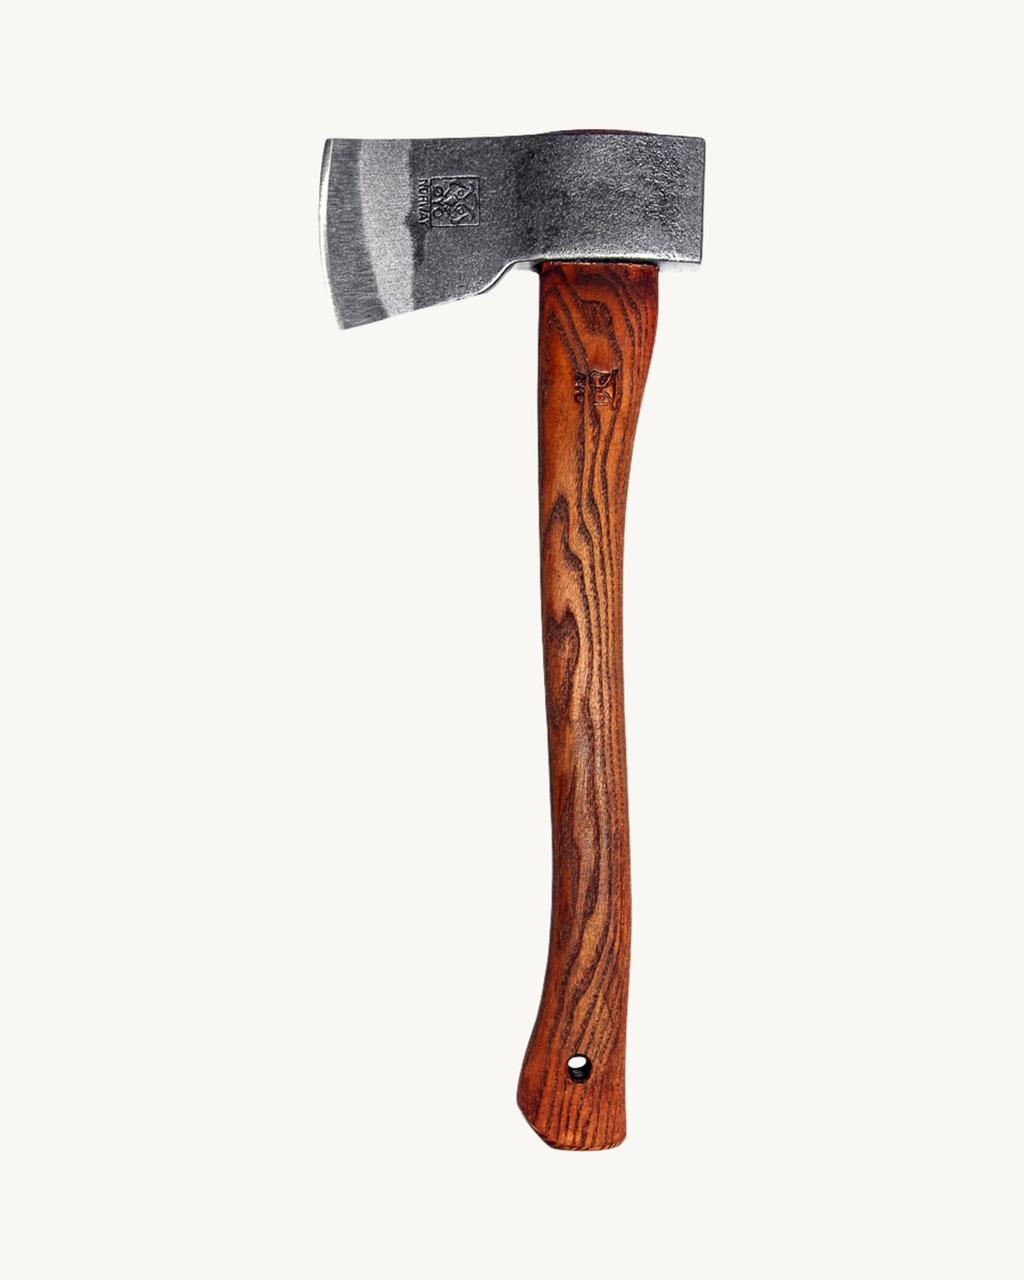 Carpenter axe